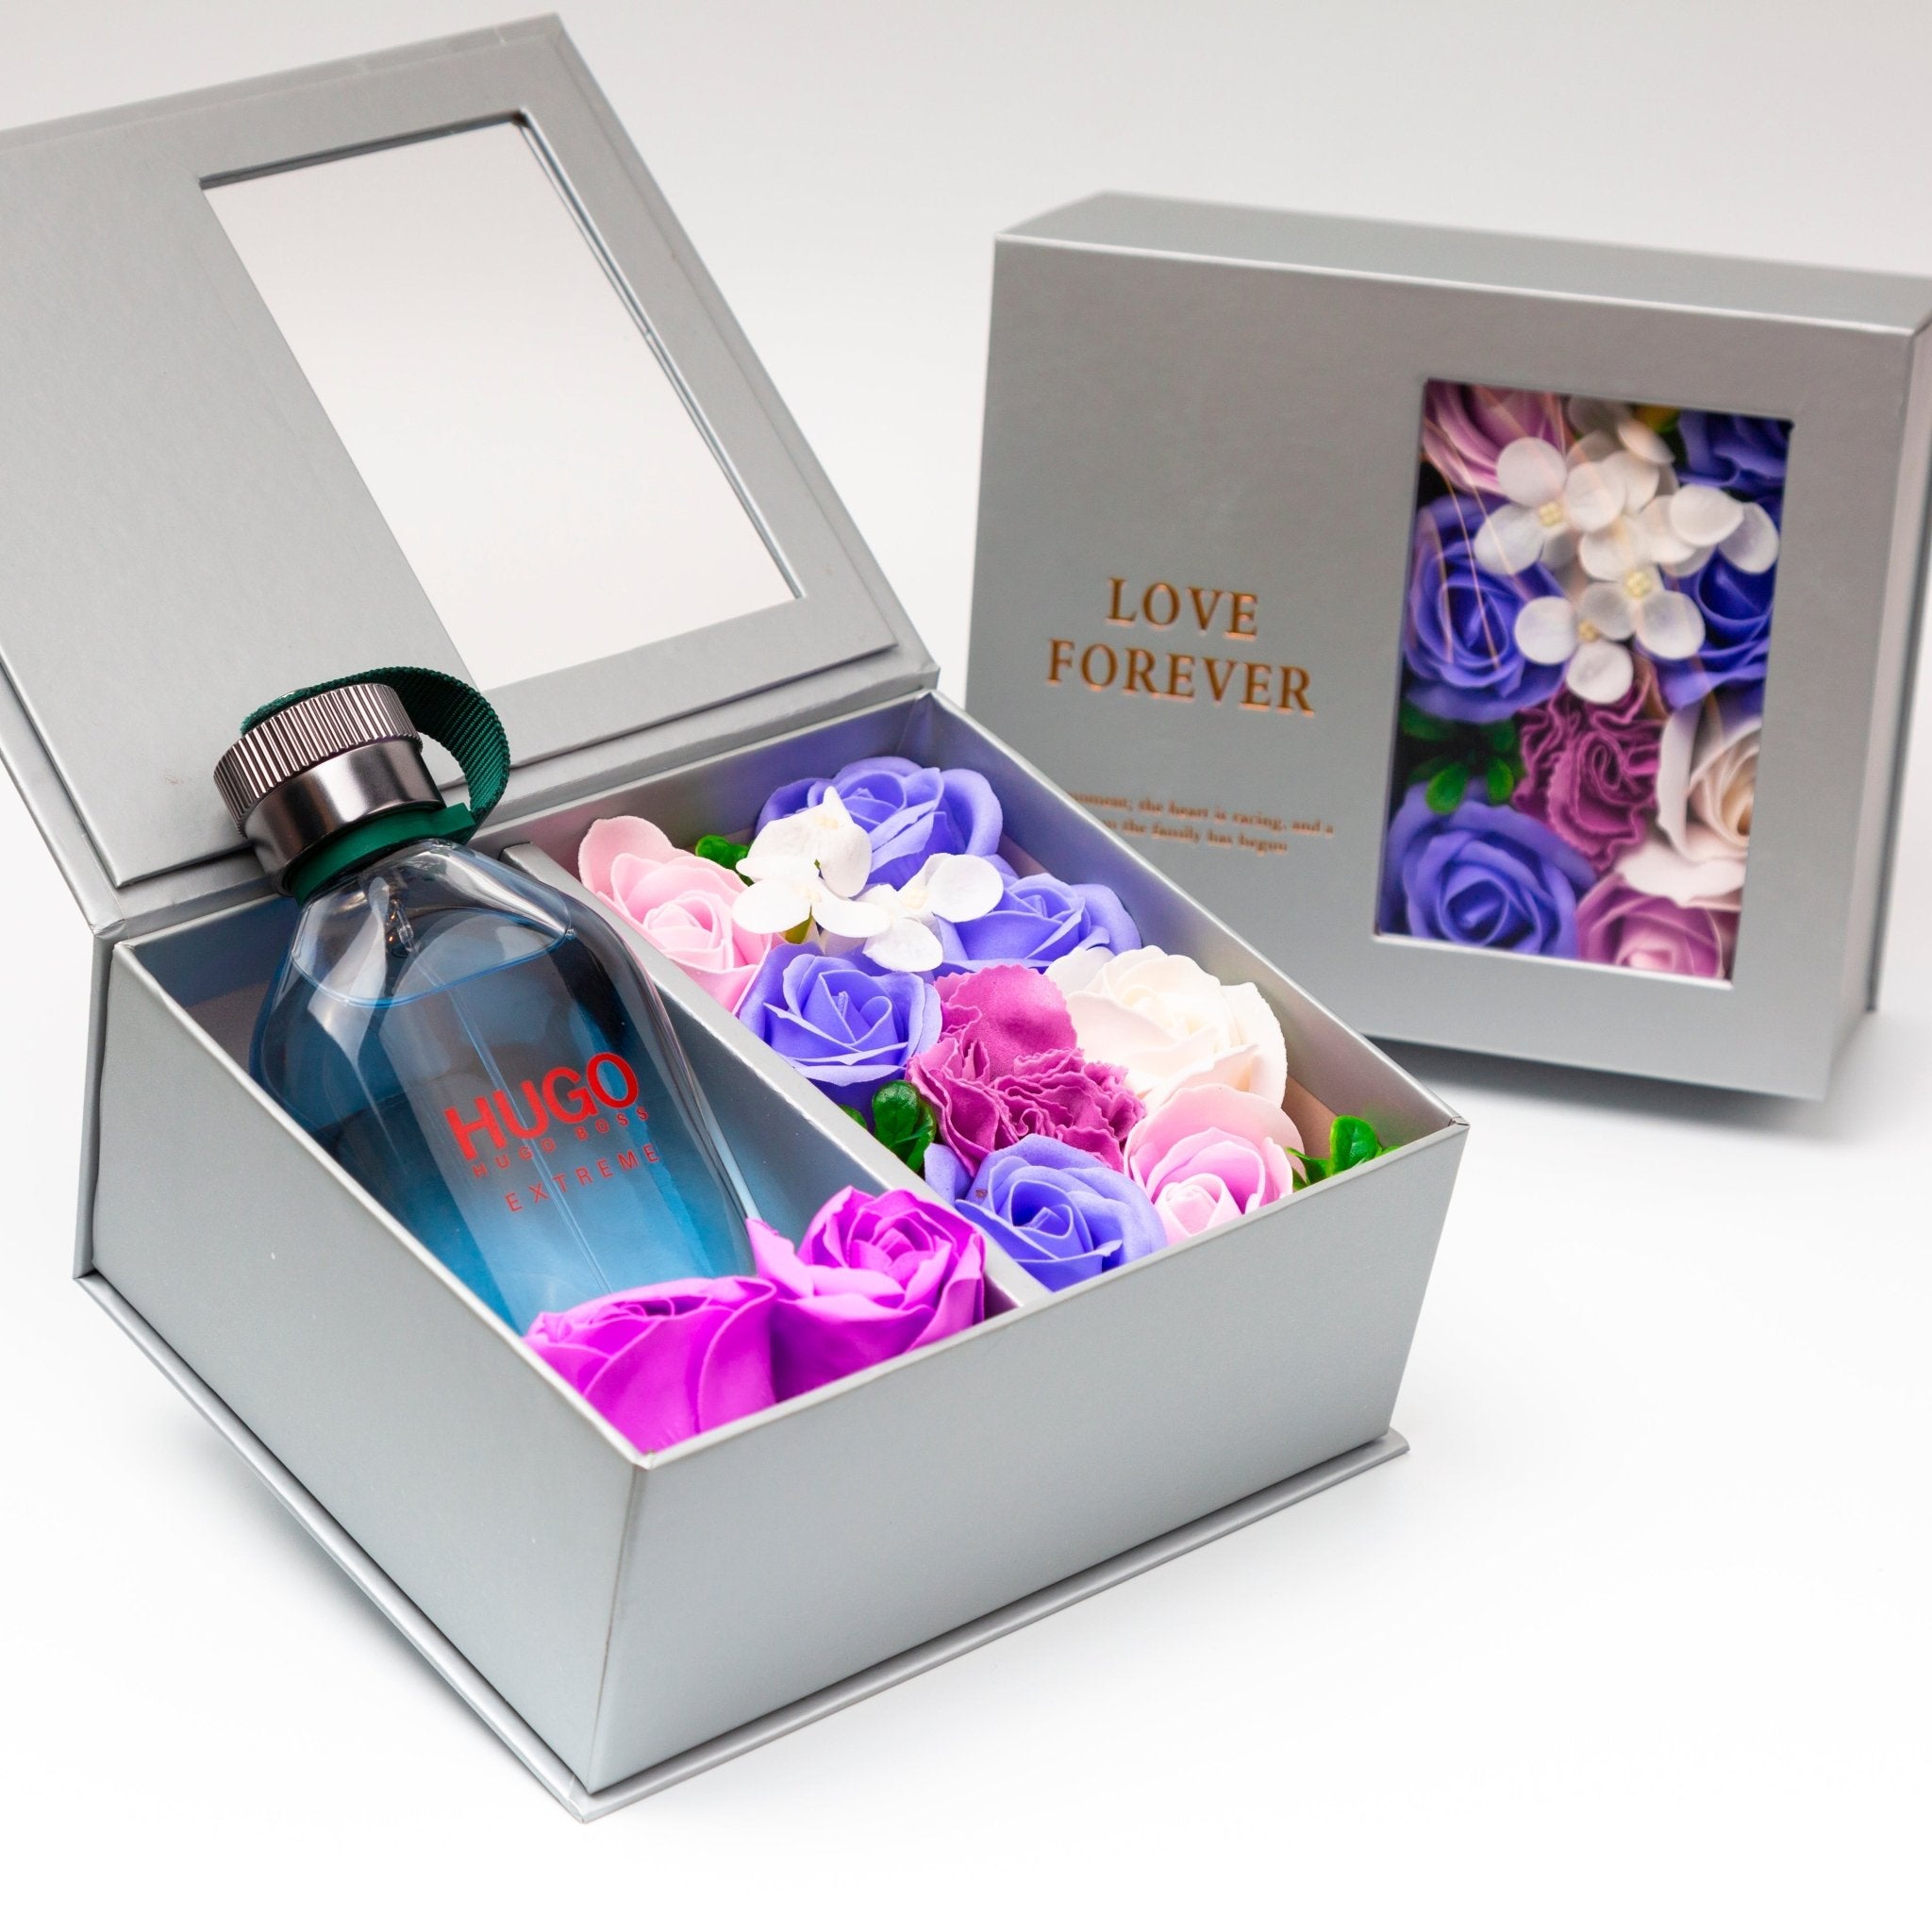 Flower Box - Perfume Gift For Men 2 - #shoFlower Box - Perfume Gift For Men 2p_name#Flower Box - Perfume Gift For Men 2Gift Boxes & TinsTakreemTakreem.joMenPerfumeFlower Box - Perfume Gift For Men 2 - Takreem.jo